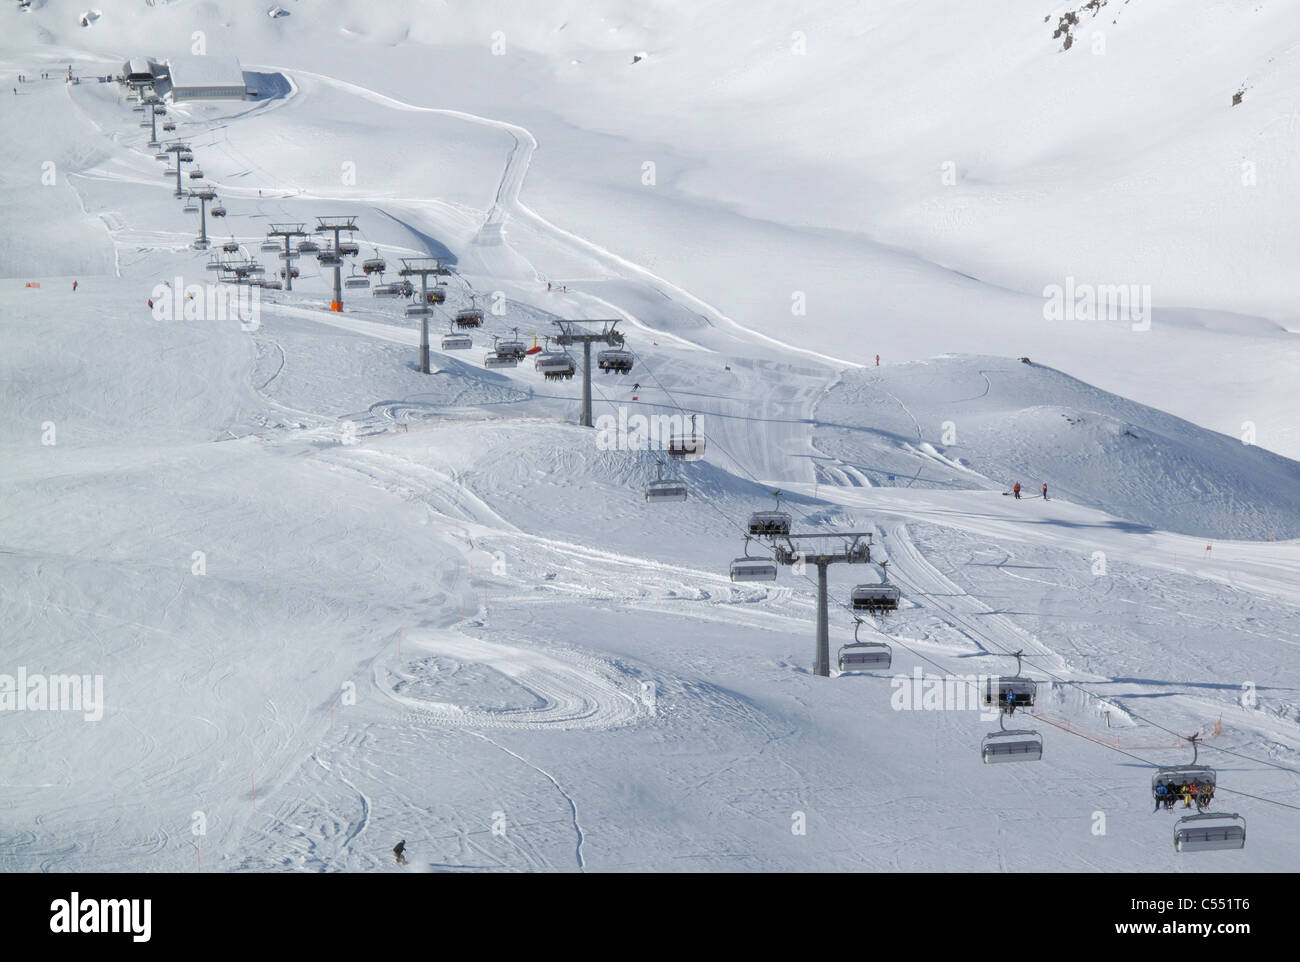 Un télésiège sur une piste de ski dans la station de ski de Valtournenche dans les Alpes italiennes Banque D'Images